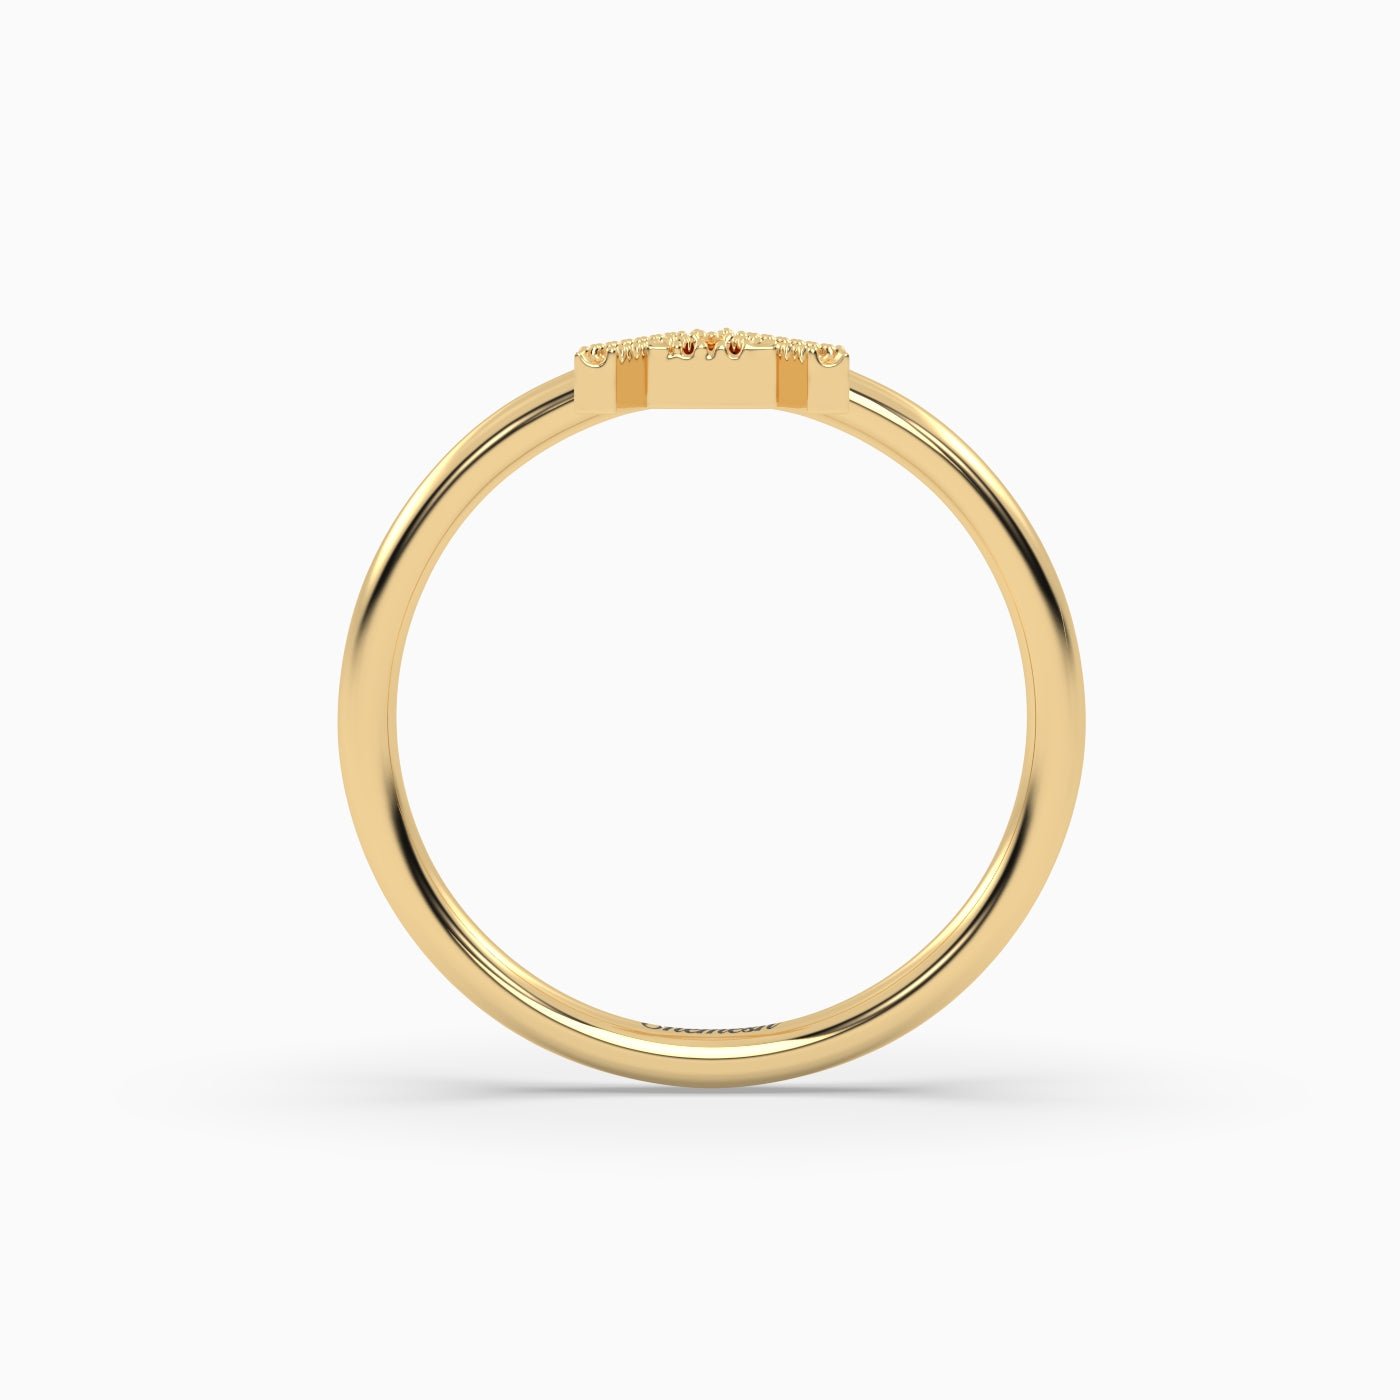 18K Gold "A" Initial Ring - shemesh_diamonds